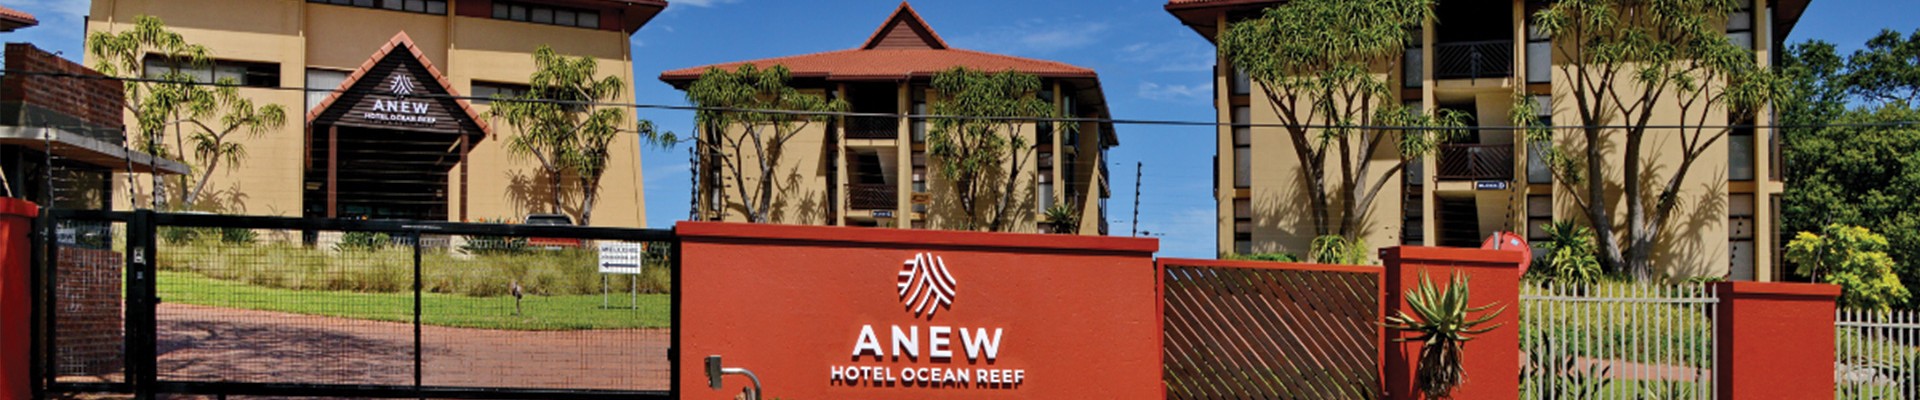 4* Anew Hotel Ocean Reef- Zinkwazi - Self Catering Package (3 nights)